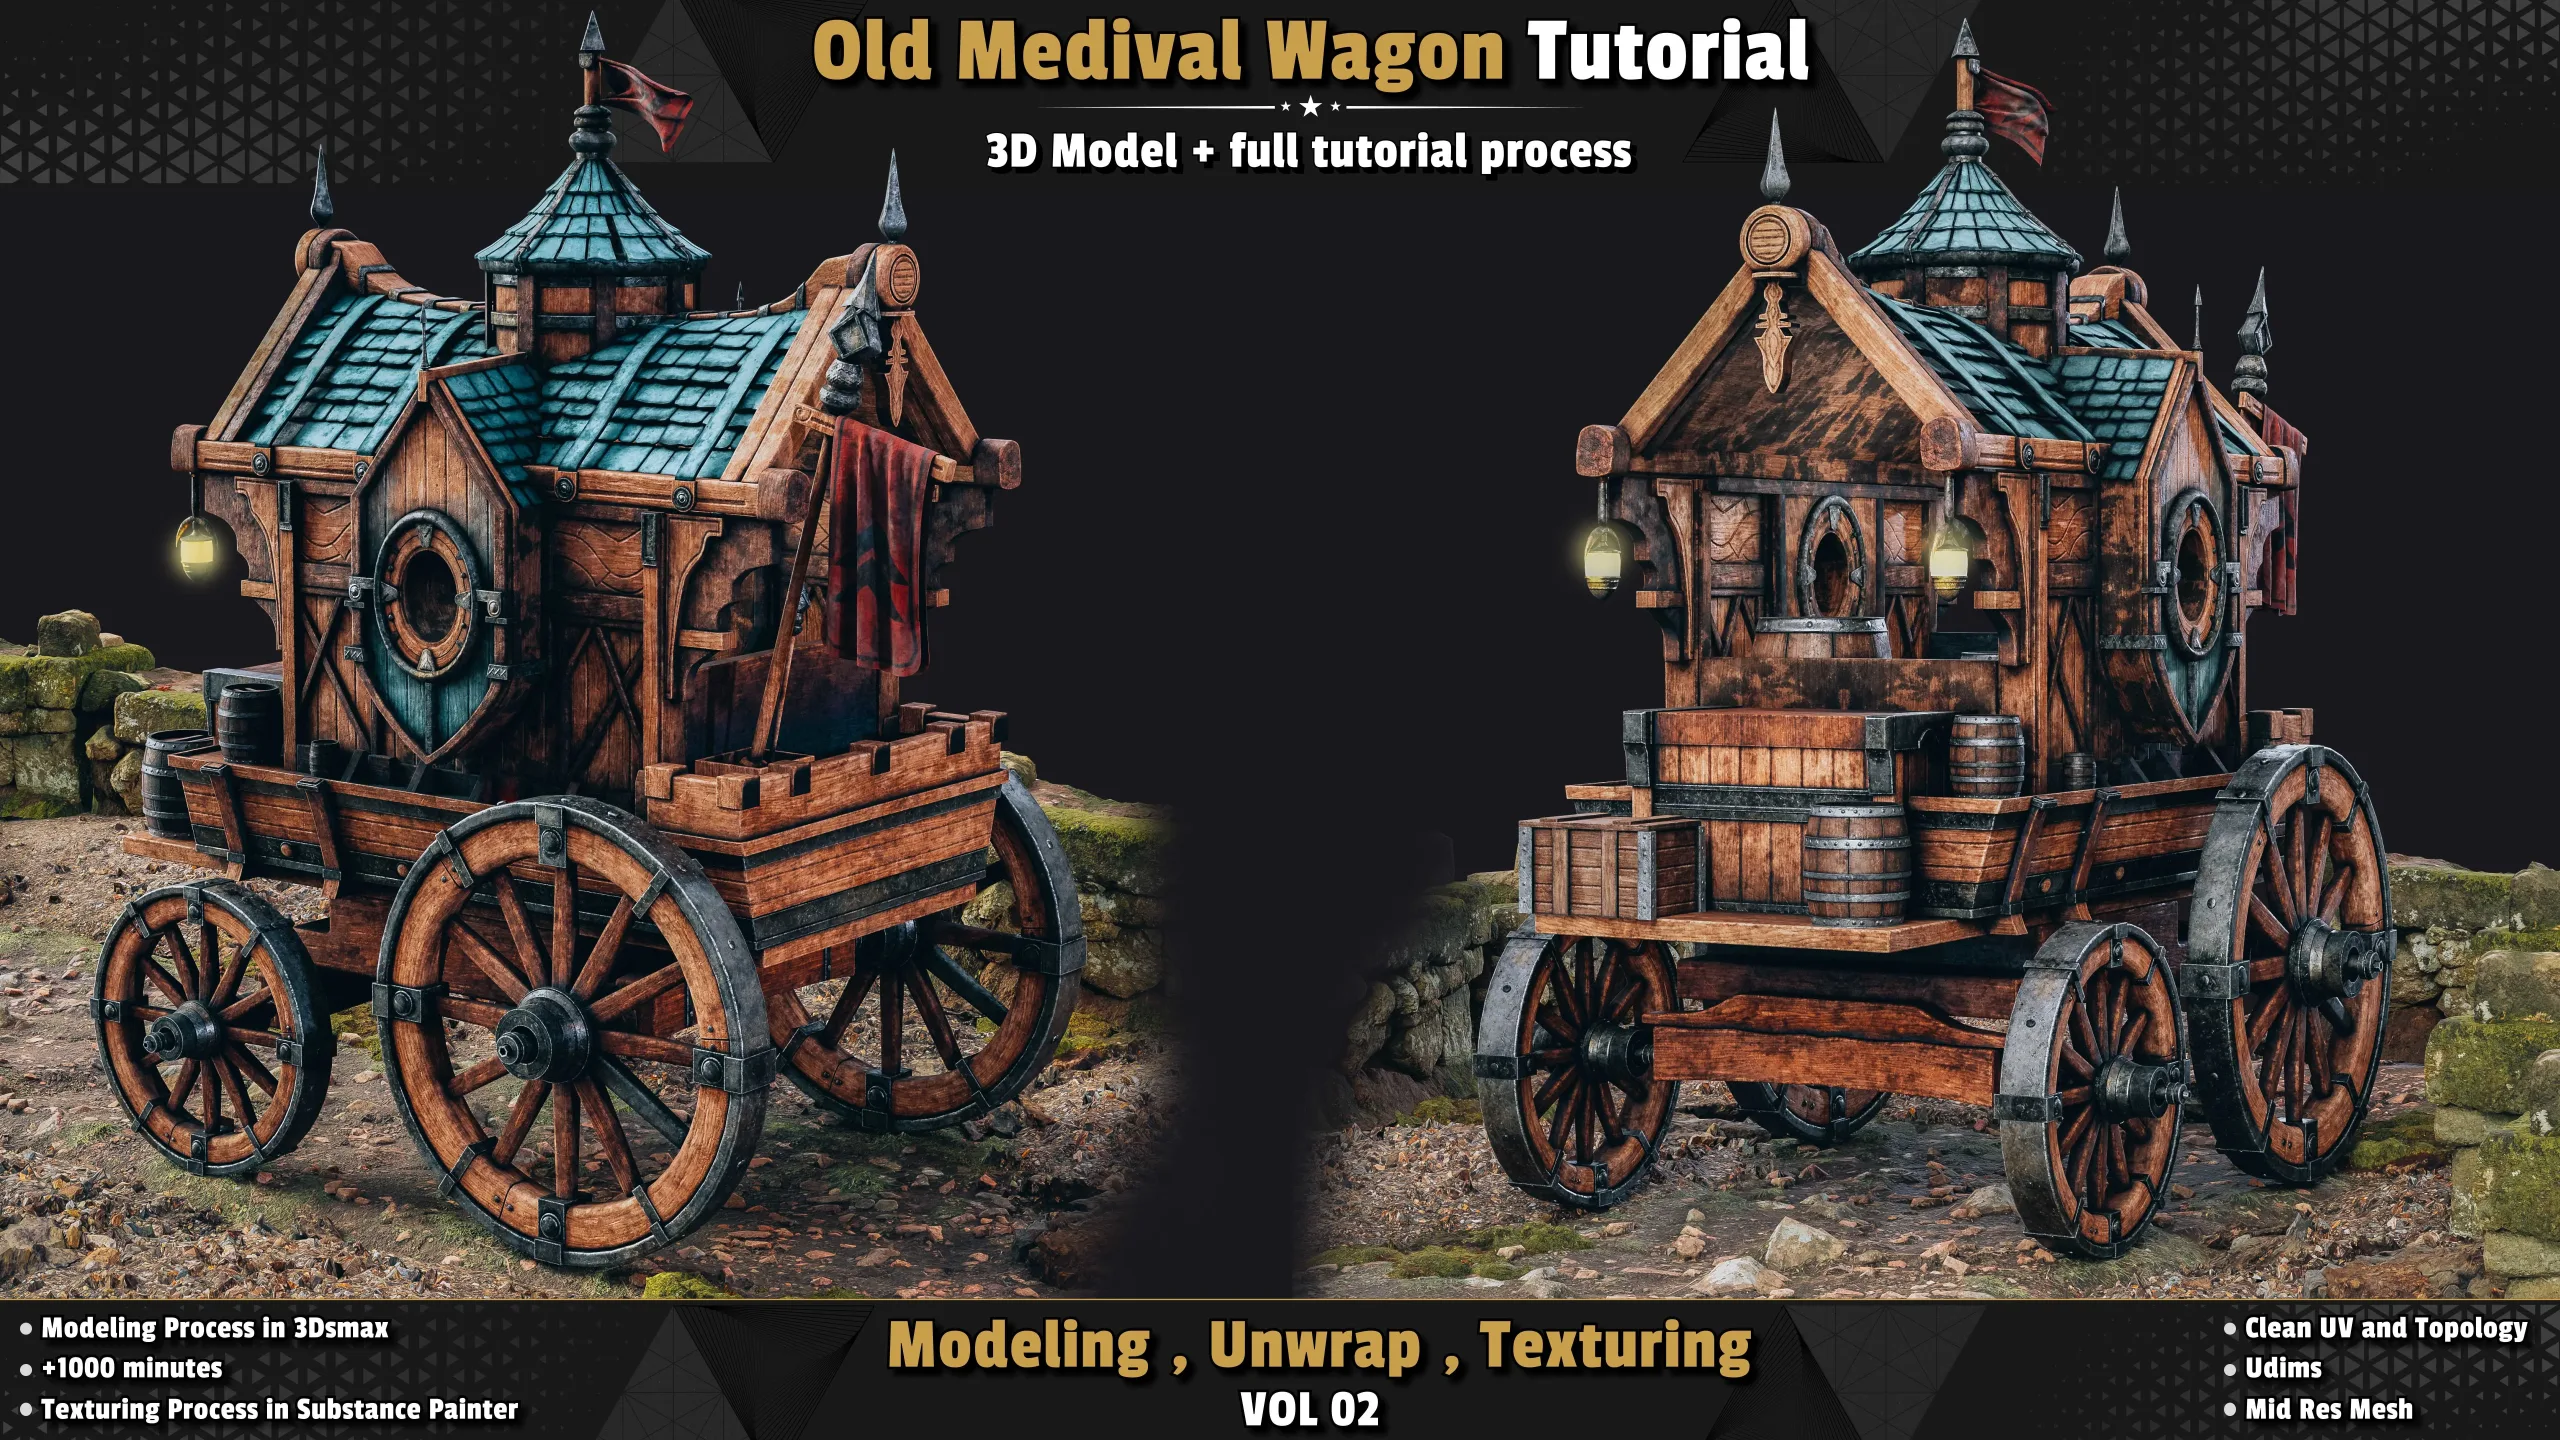 Old Medival Wagon / 3D Model + Full Tutorial Process